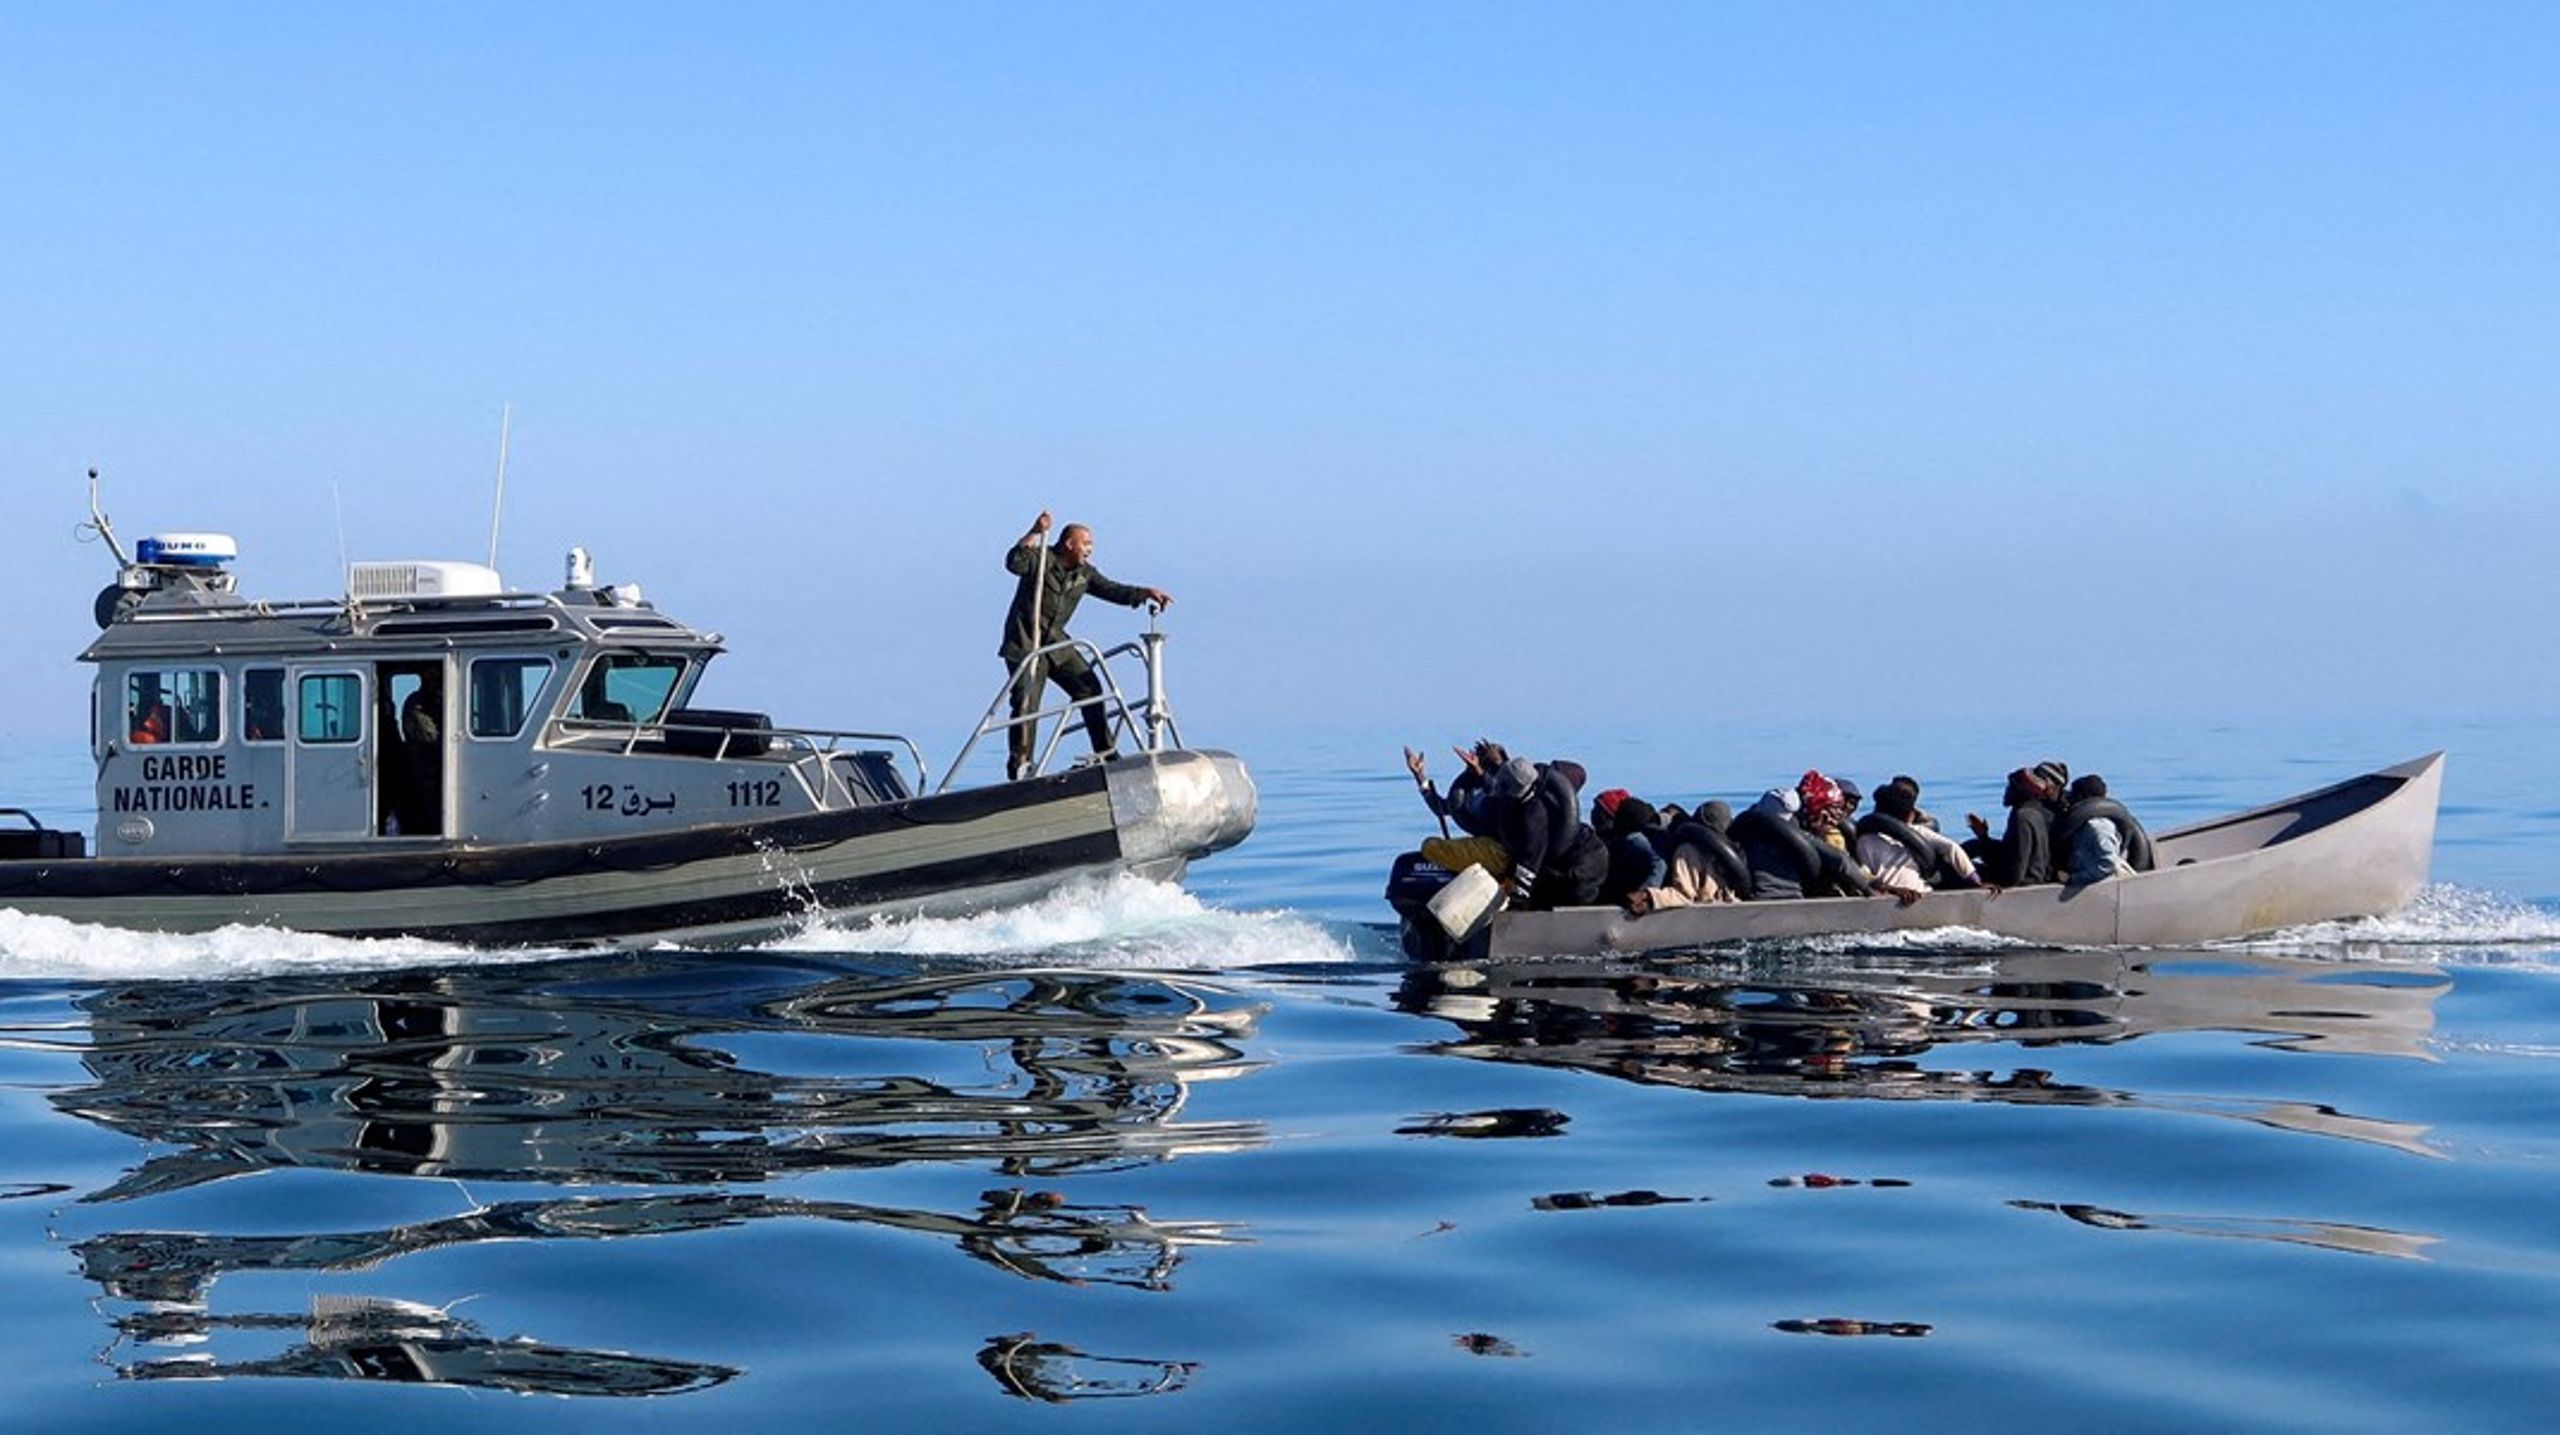 Den tunesiske kystvagt forsøger at forhindre en båd med migranter i at stævne ud. Tunesien er et af de lande, hvorfra et øget antal flygtninge og migranter tager stadig længere og farligere ture for at nå frem til det europæiske kontinent. Mange forliser og dør undervejs.